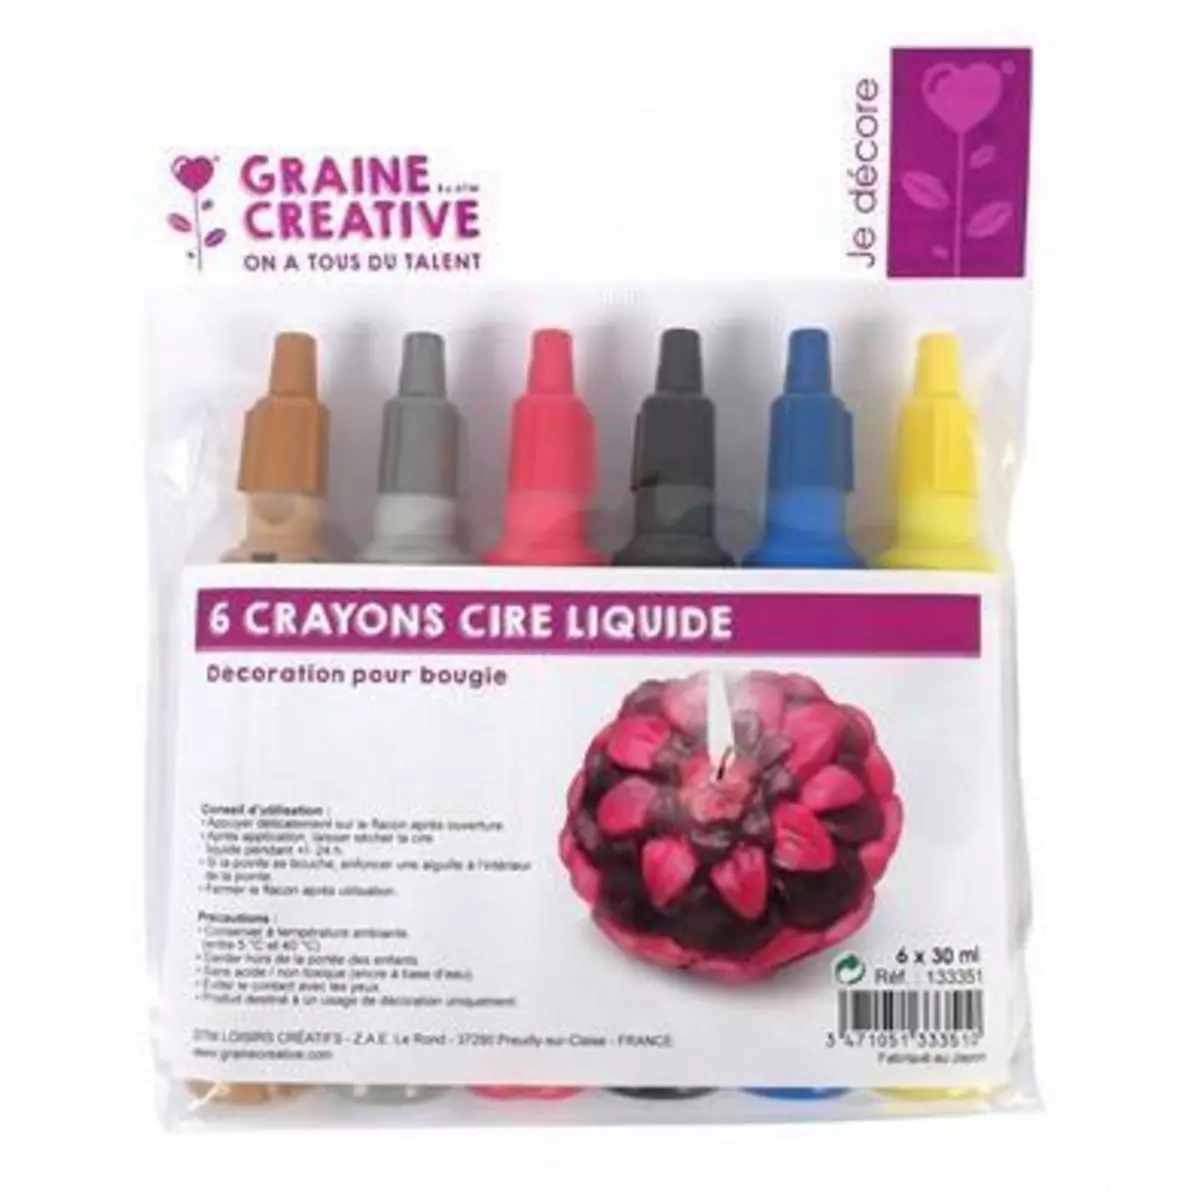 Graine créative 6 crayons cire liquide pour bougie